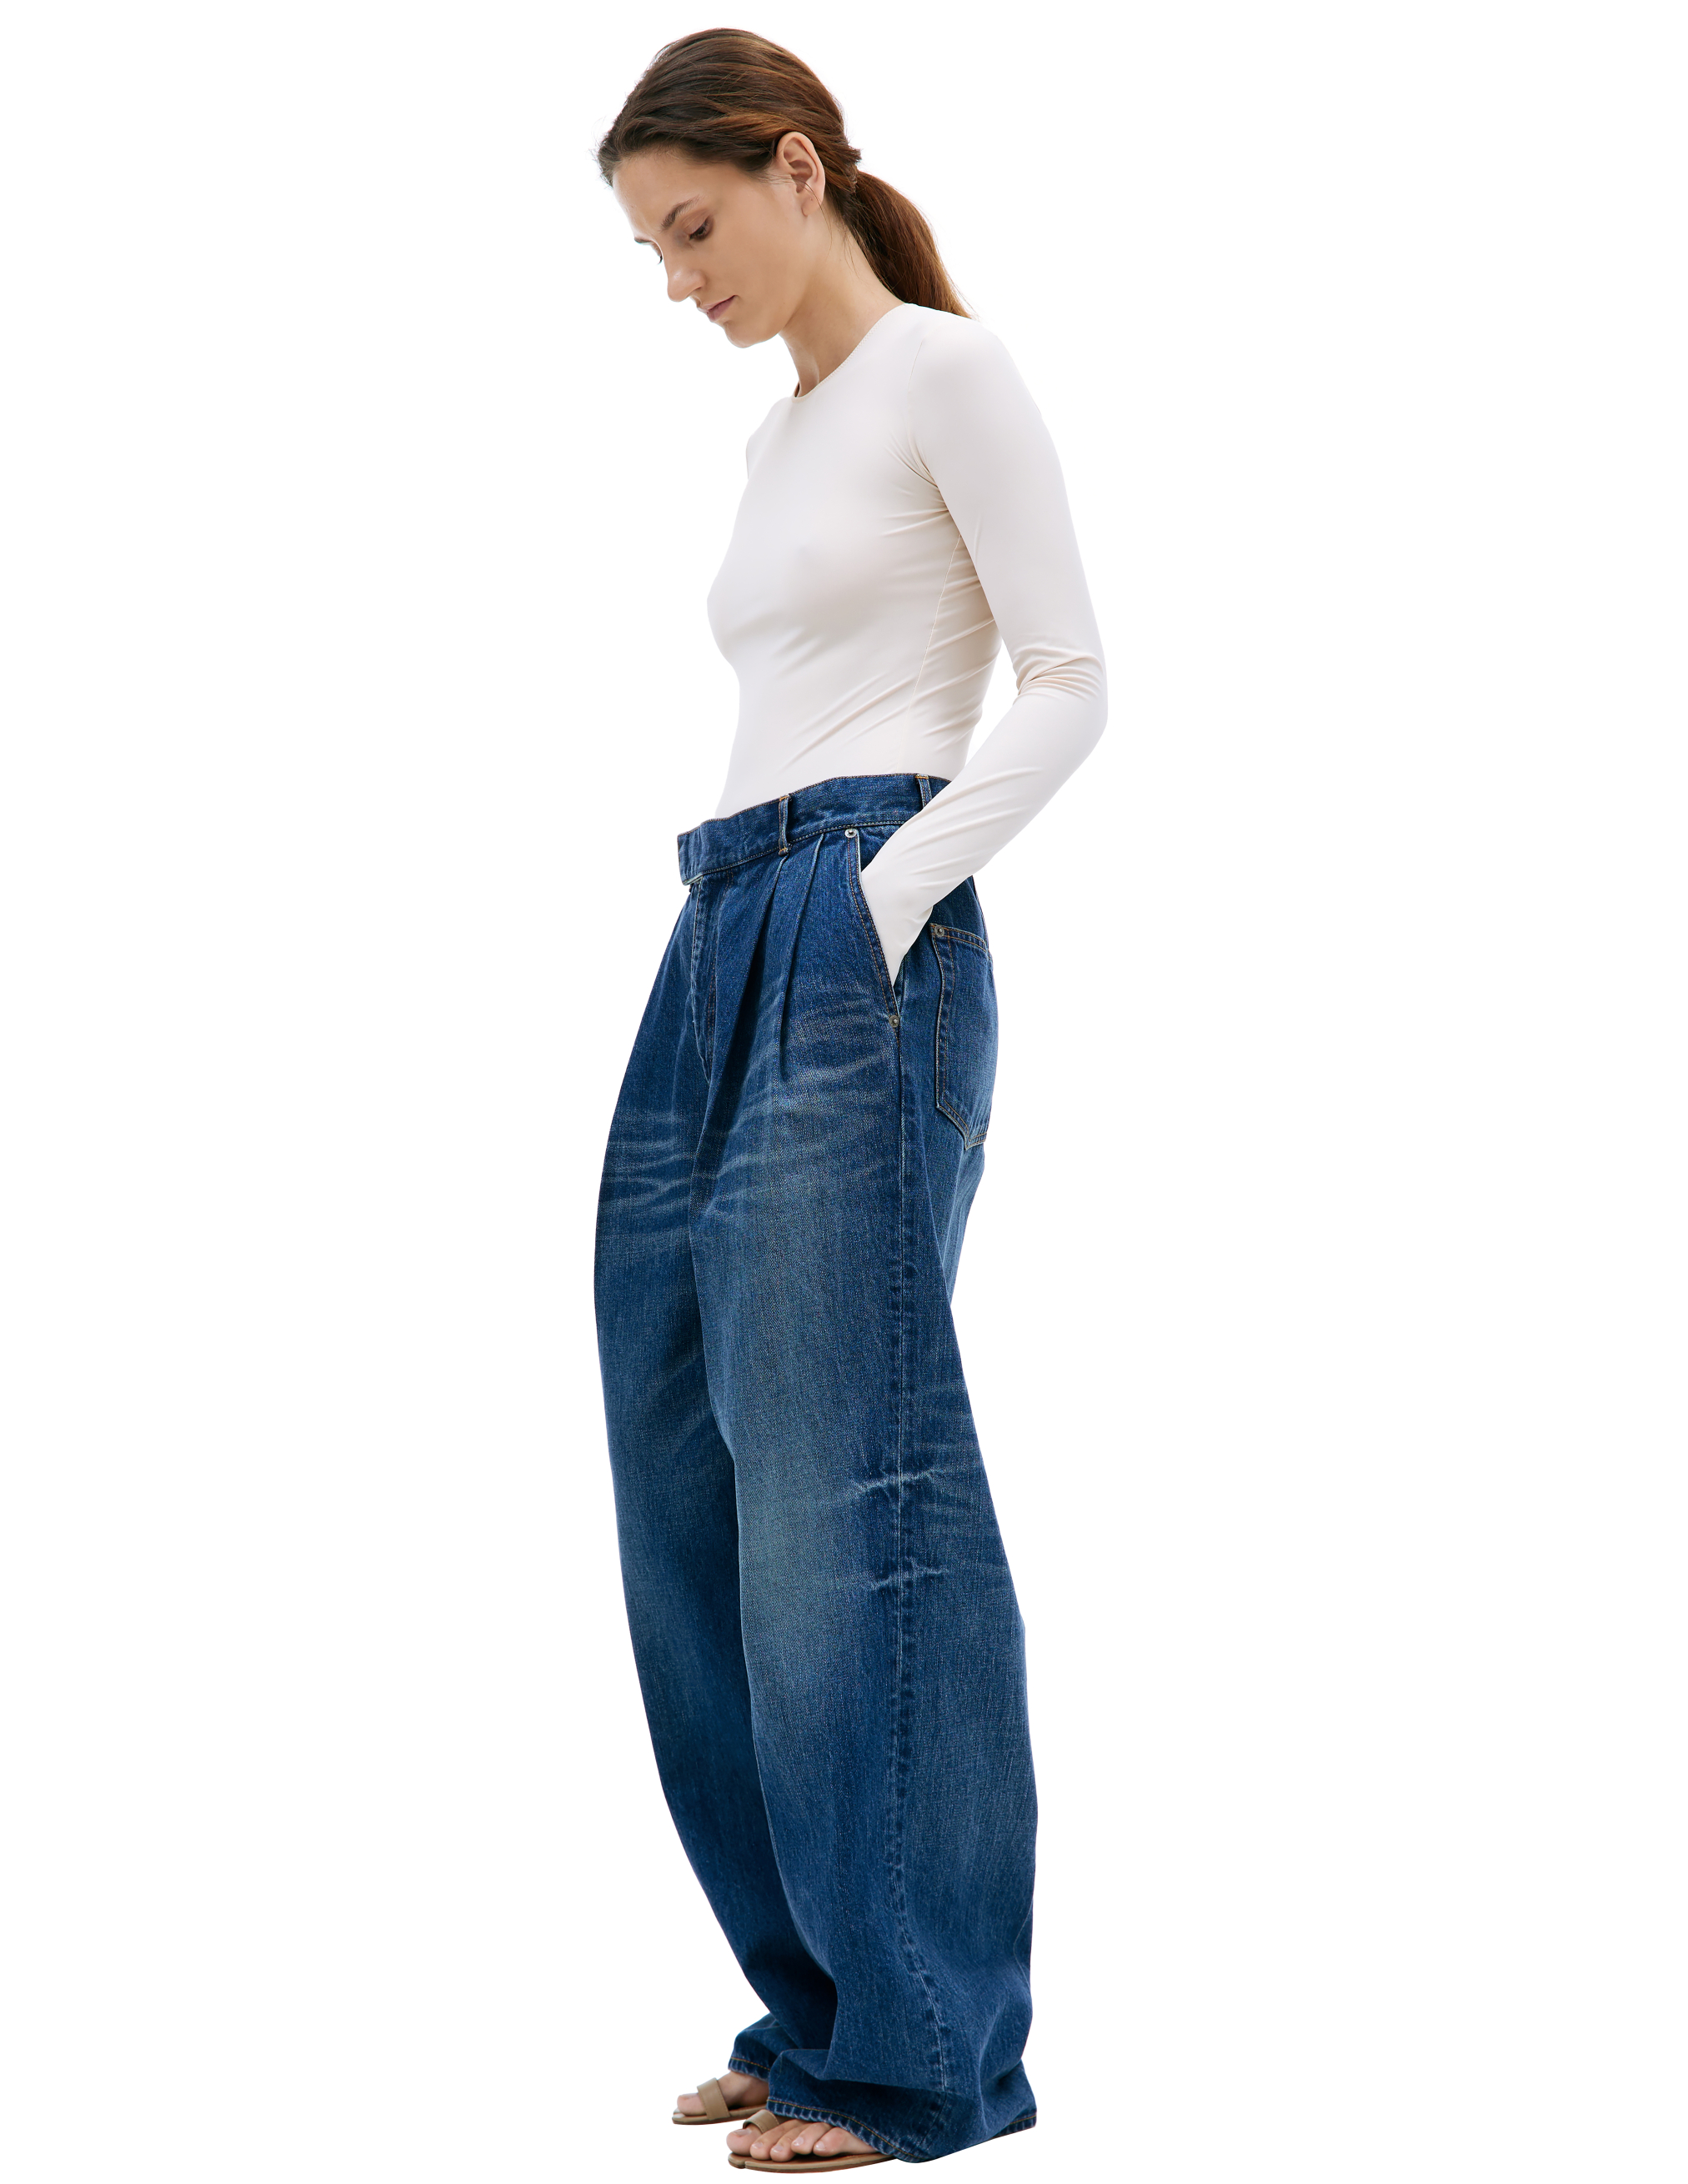 Широкие джинсы с защипами Undercover UC1C1504-2/INDIGO, размер 3 UC1C1504-2/INDIGO - фото 2